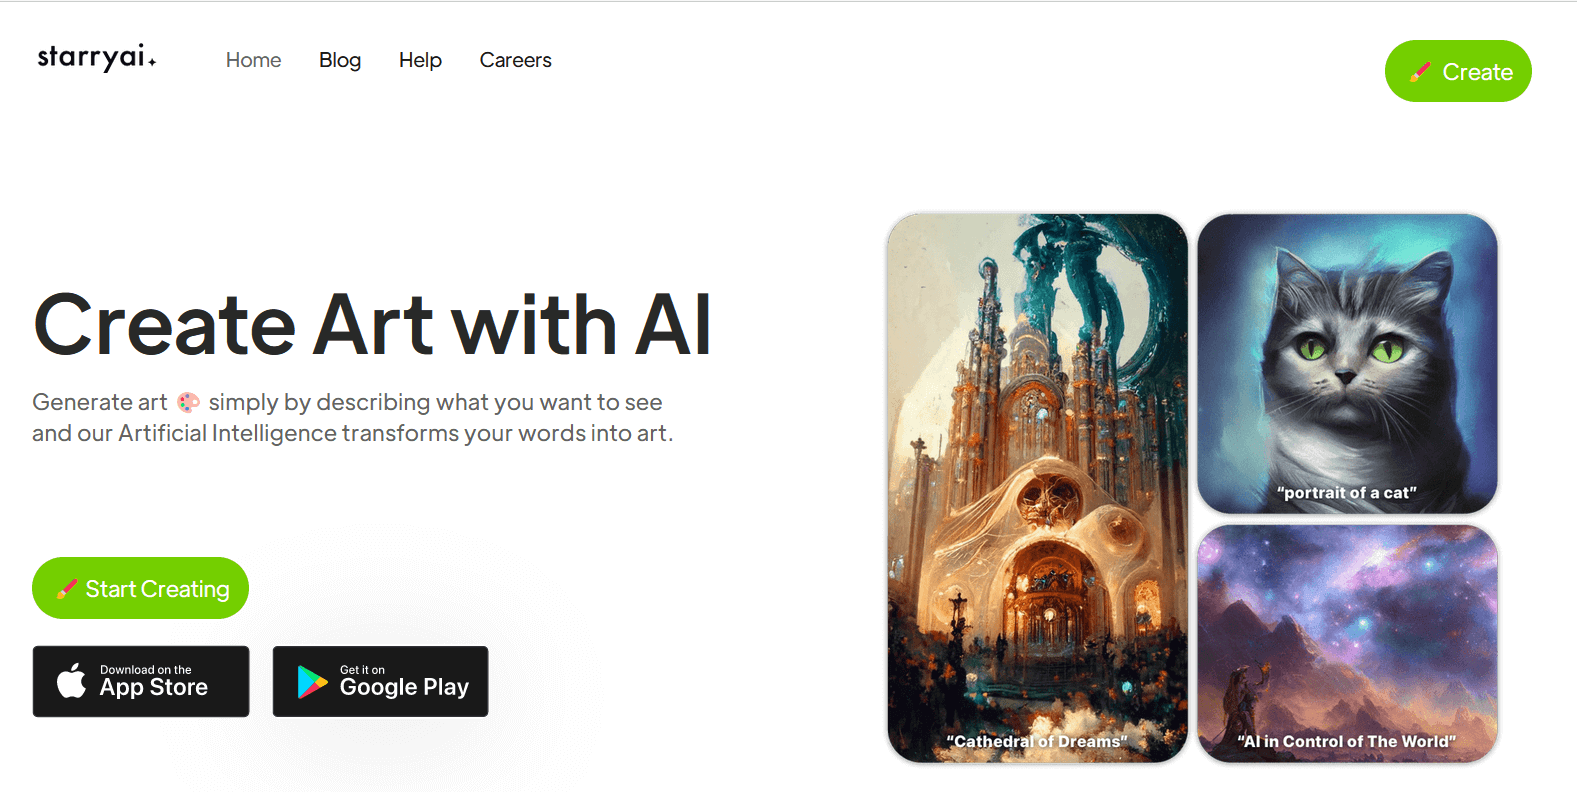 Esplora Starry AI, la piattaforma che rivoluziona la creazione di immagini artistiche e fotografiche. Con strumenti intuitivi e avanzati come il 'prompt builder', Starry AI offre un'esperienza unica nel mondo dell'arte digitale.